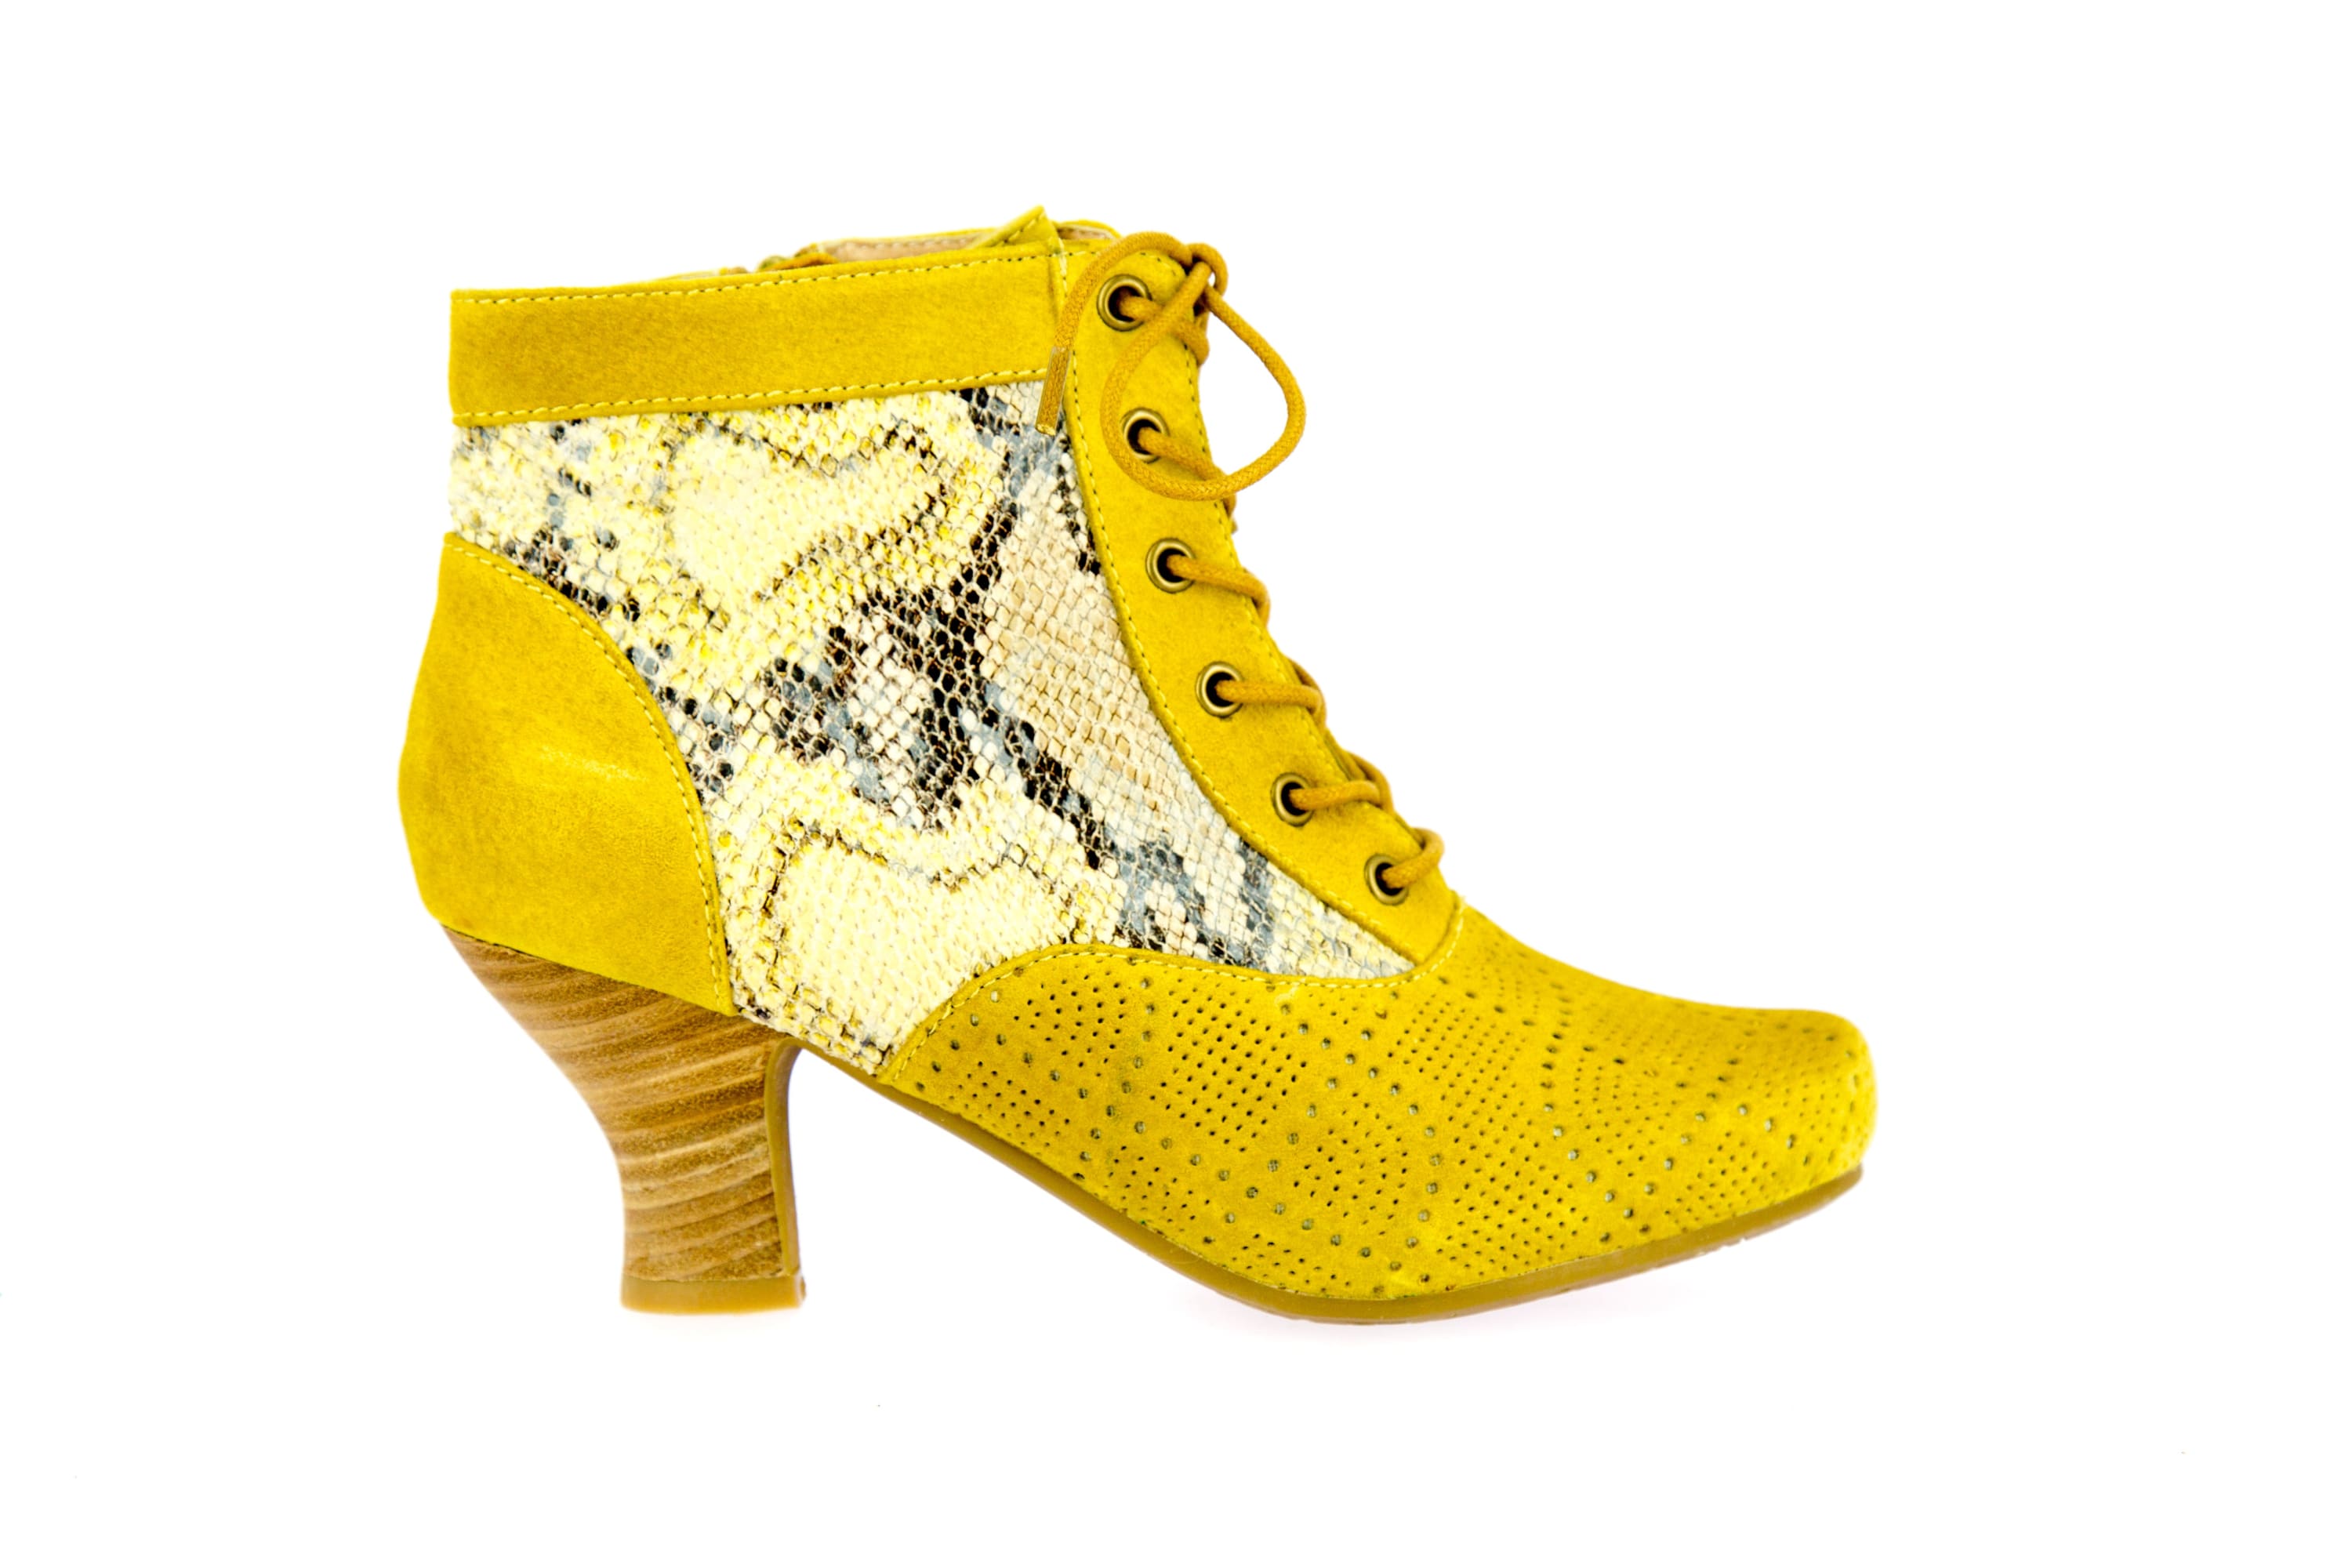 Schuhe CANDICE 08 - 35 / Gelb - Stiefeletten